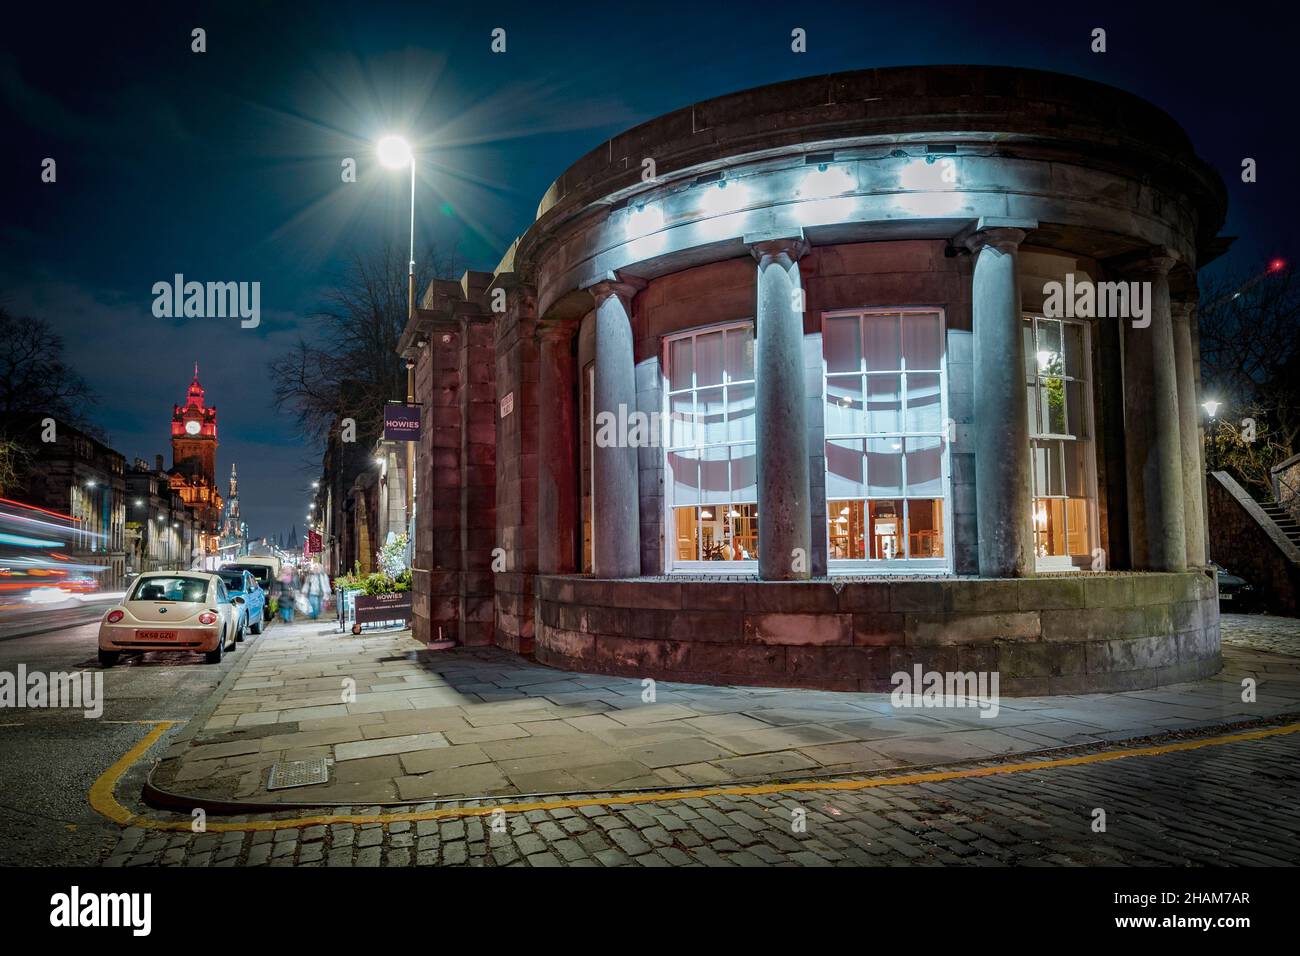 Vista notturna dall'esterno del ristorante Howies a Edimburgo, Scozia, Regno Unito Foto Stock